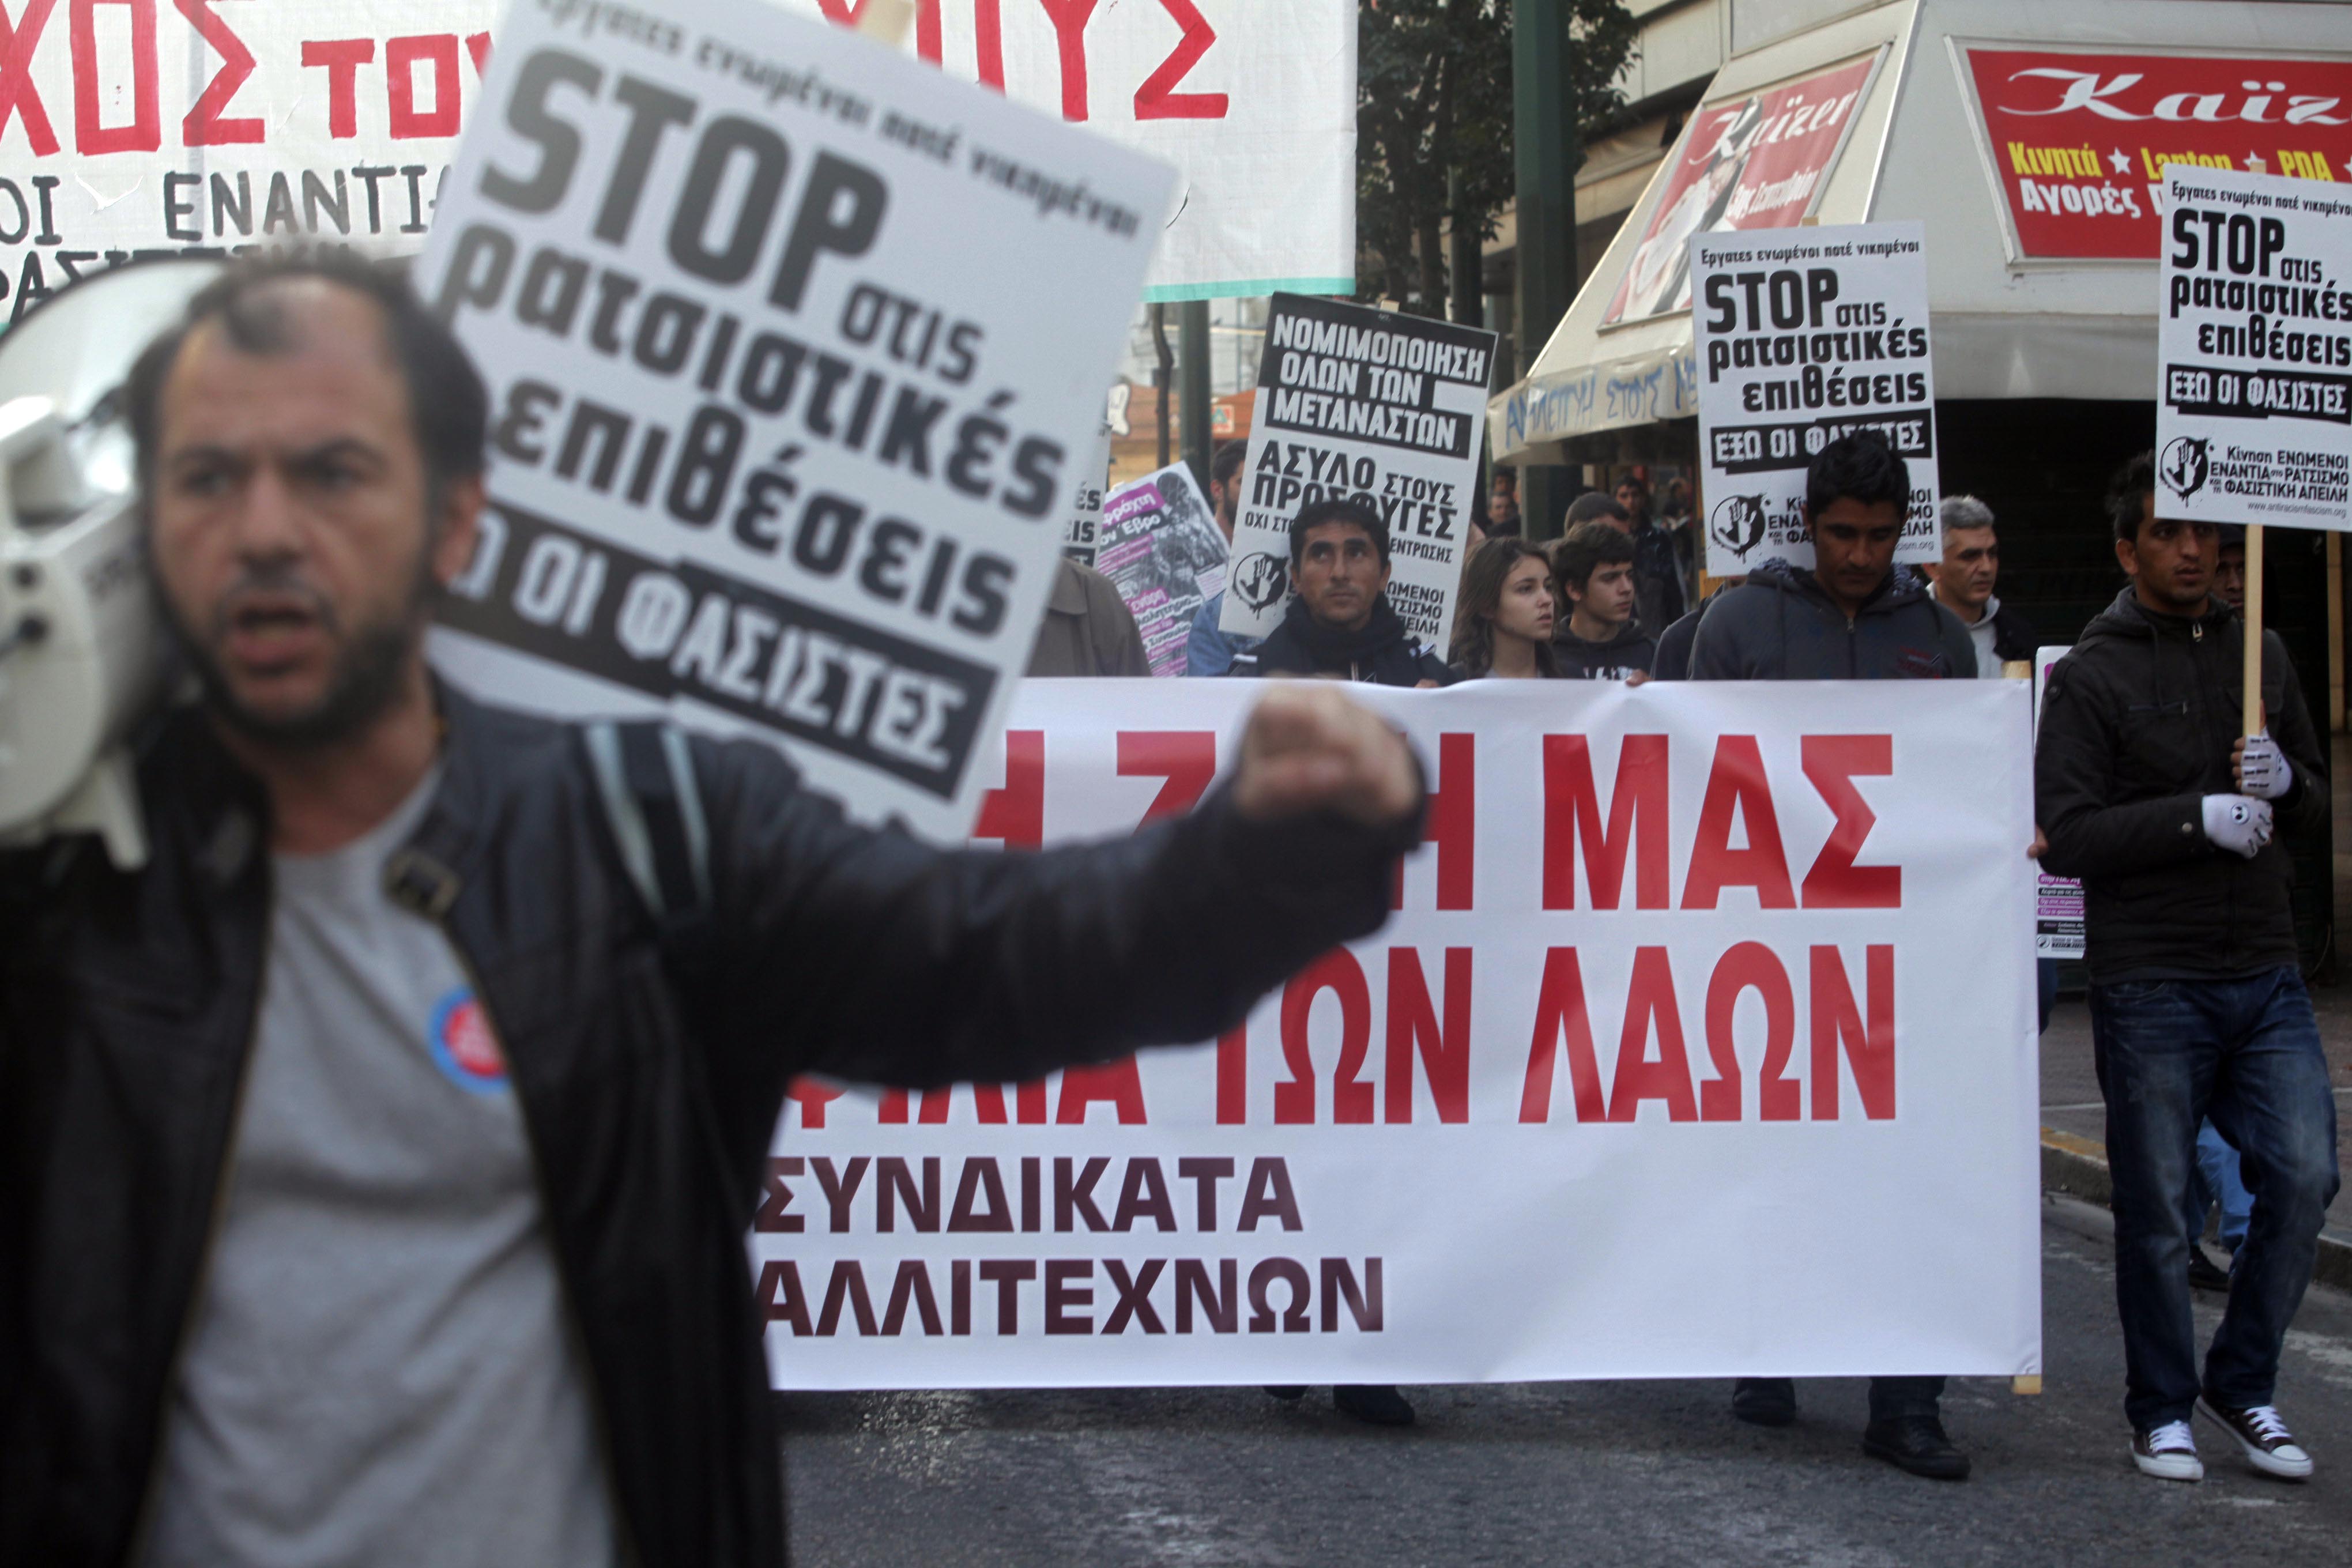 Αντιρατσιστική πορεία το μεσημέρι στο κέντρο της Αθήνας